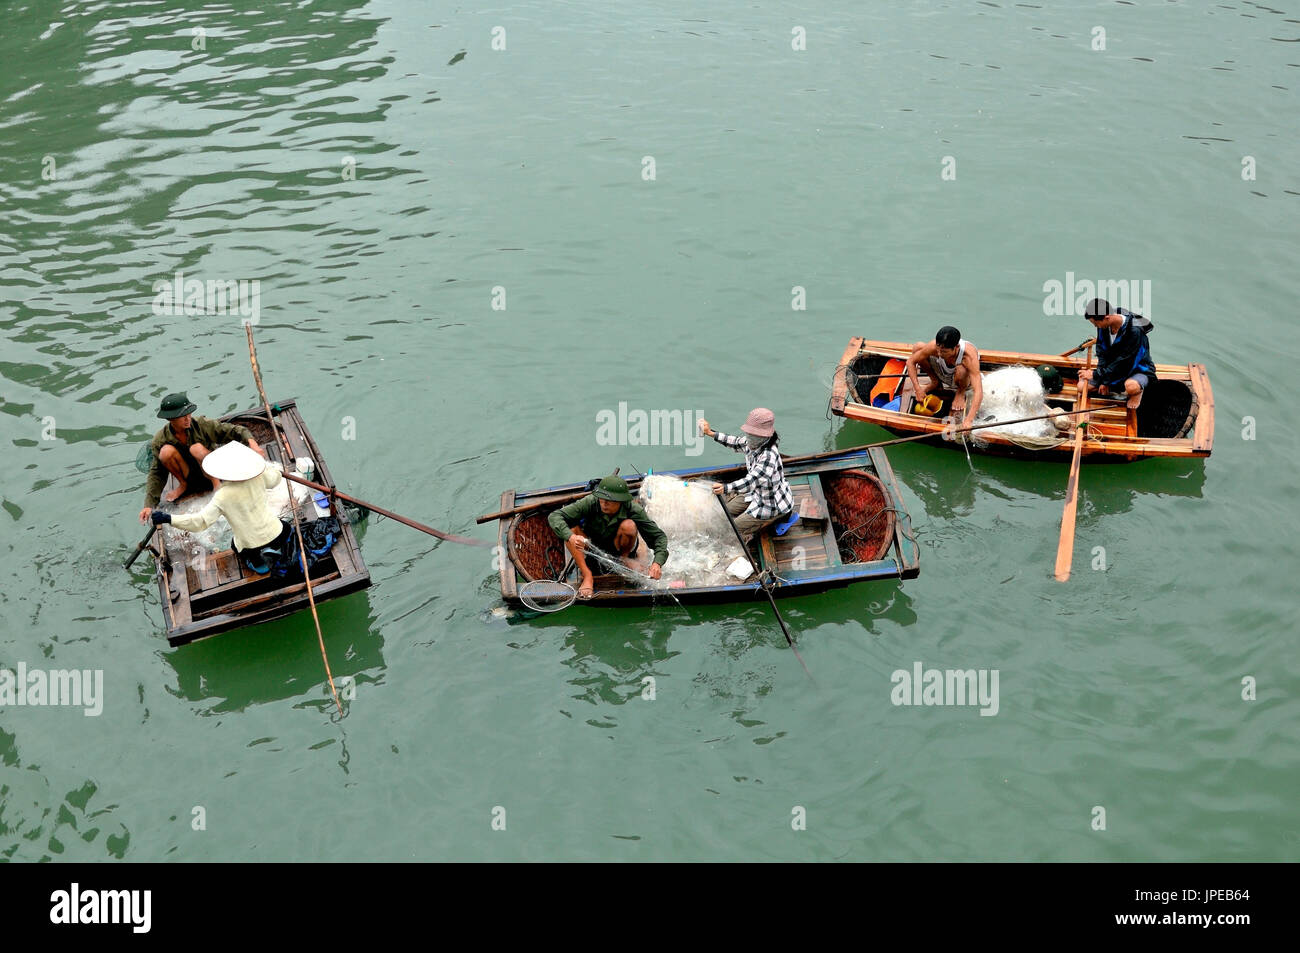 Il Vietnam, Halong Bay. Gli abitanti dei villaggi galleggianti, la pesca con reti sulle caratteristiche imbarcazioni in legno Foto Stock